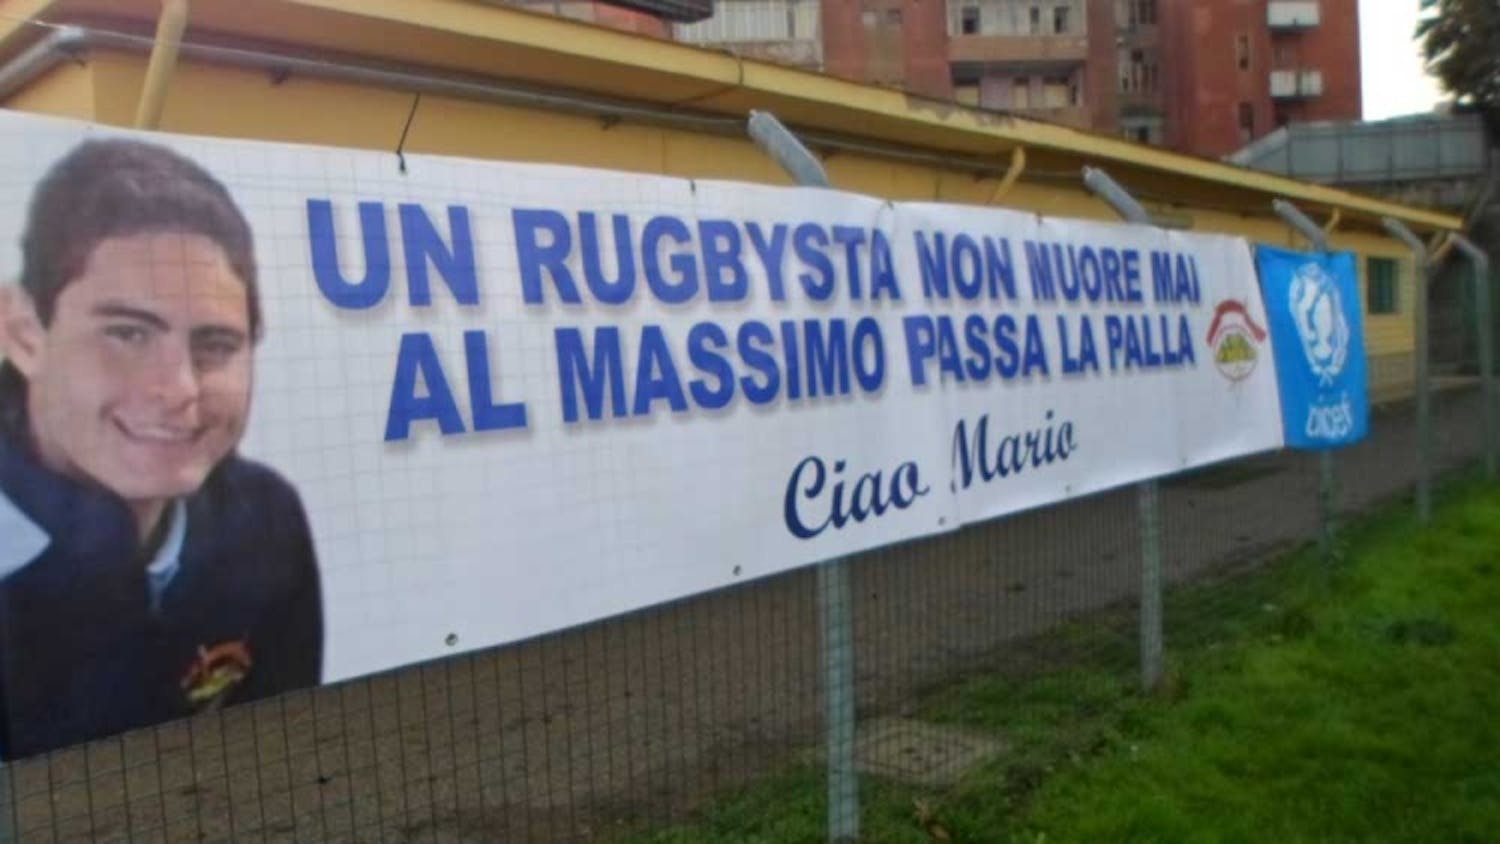 Benevento: rugby e UNICEF insieme per un'impresa straordinaria